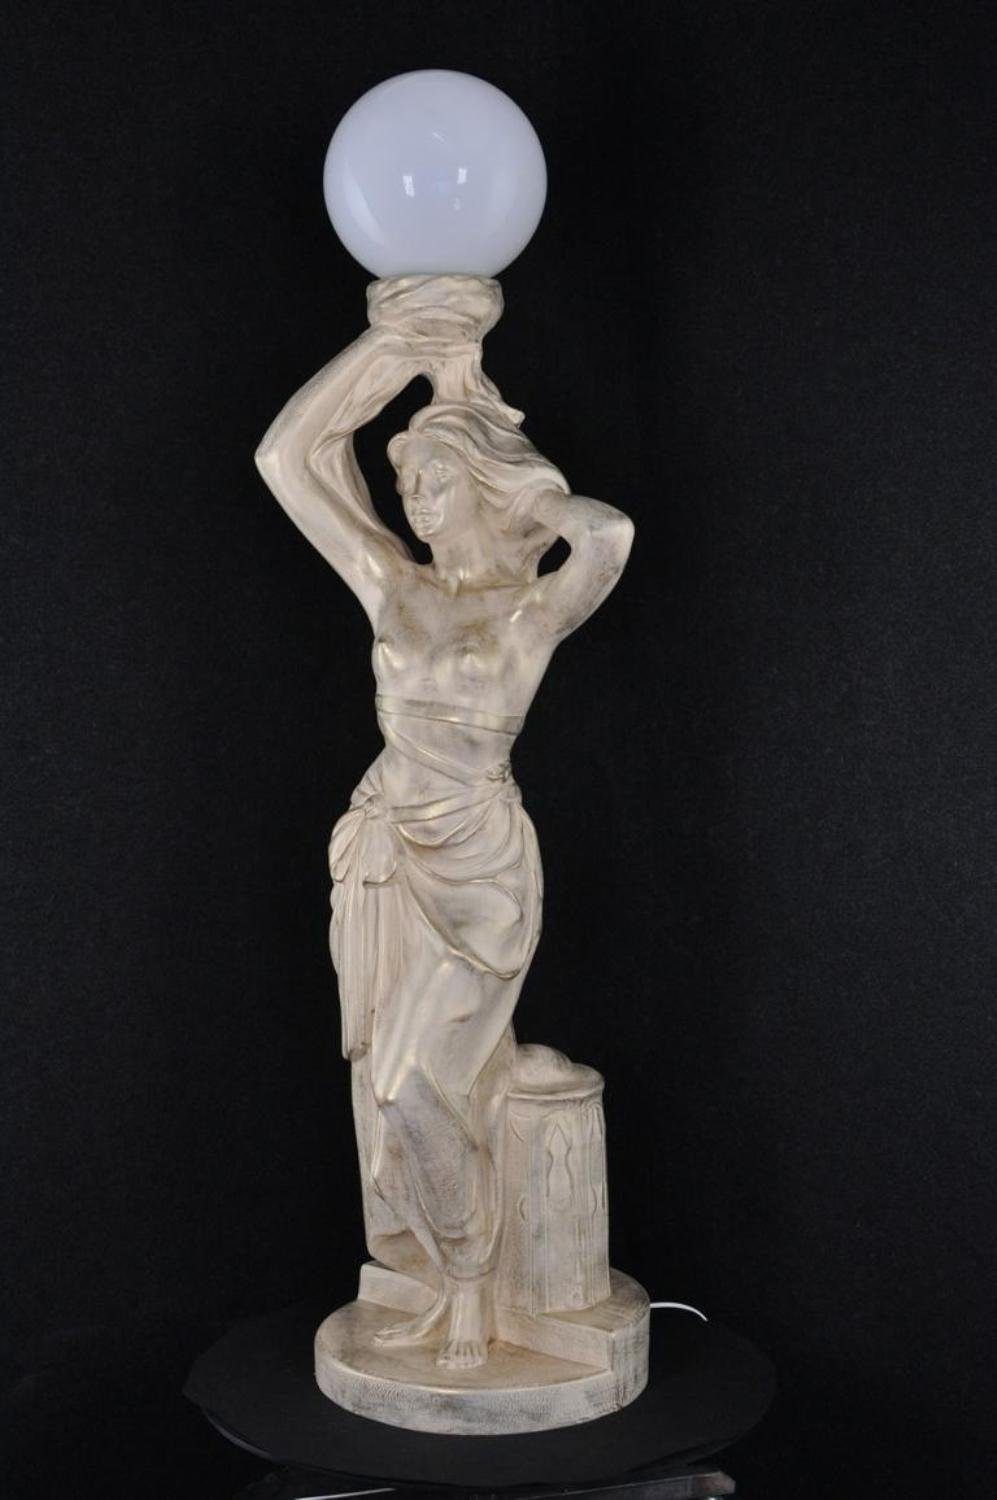 Leuchte Stehleuchte Lampe Standleuchte Stil Skulptur Figur JVmoebel Antik Skulptur